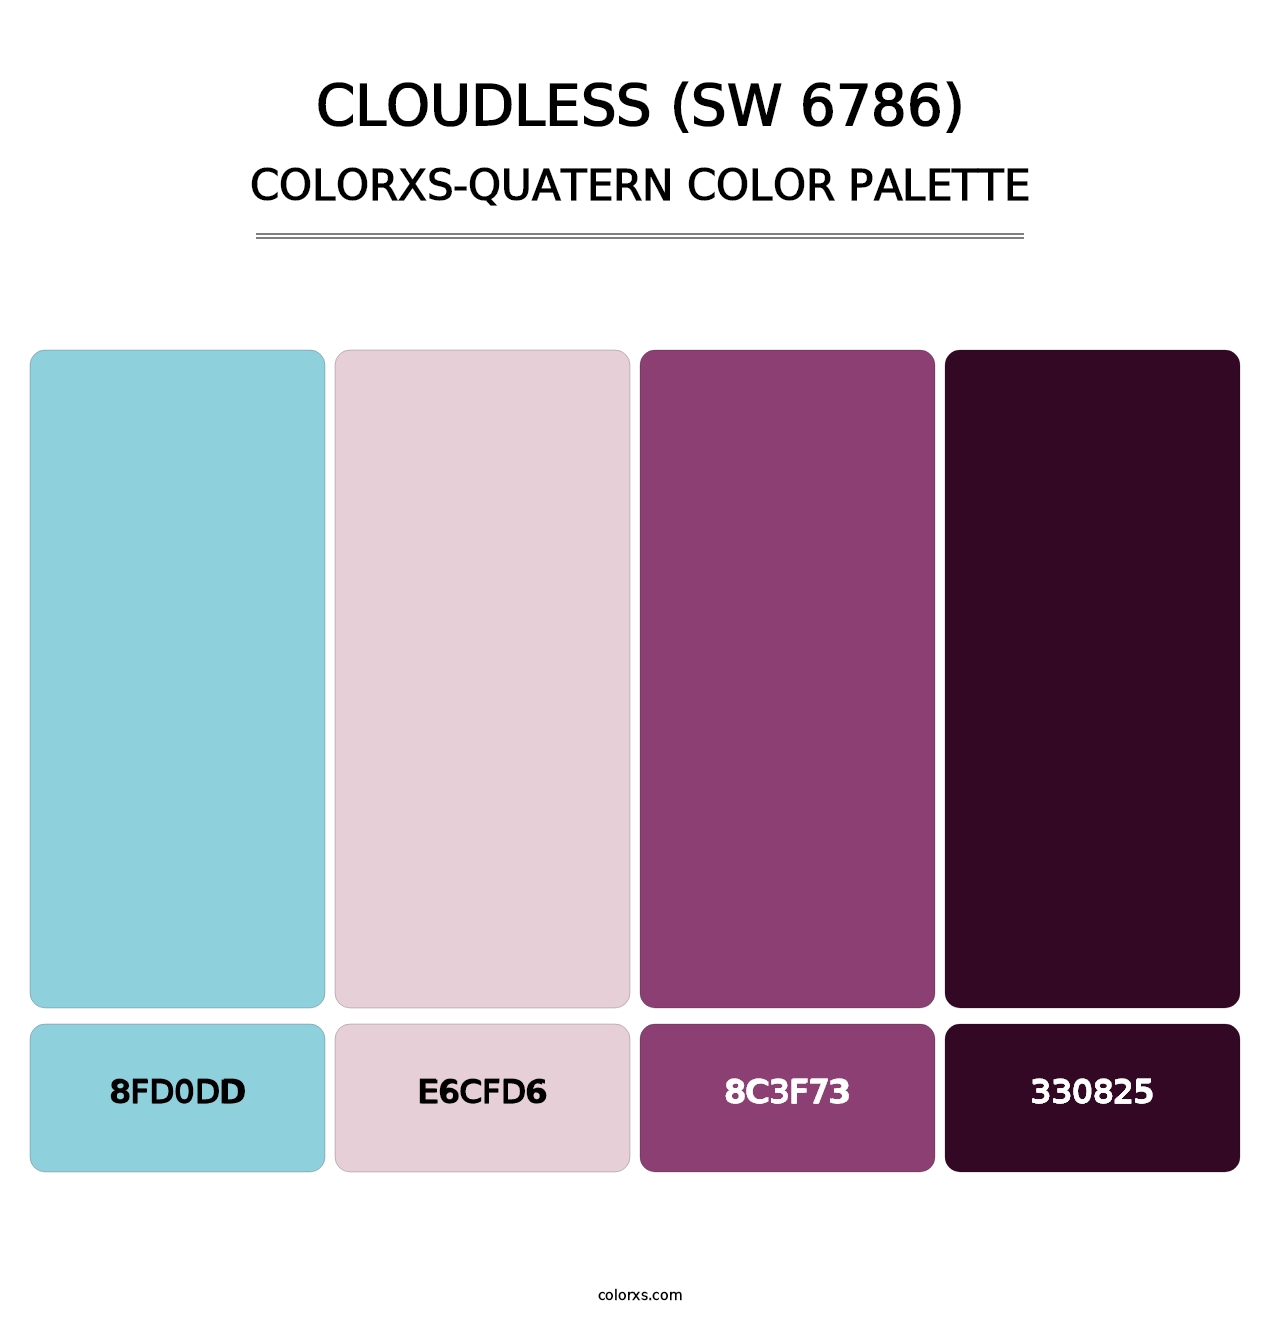 Cloudless (SW 6786) - Colorxs Quatern Palette